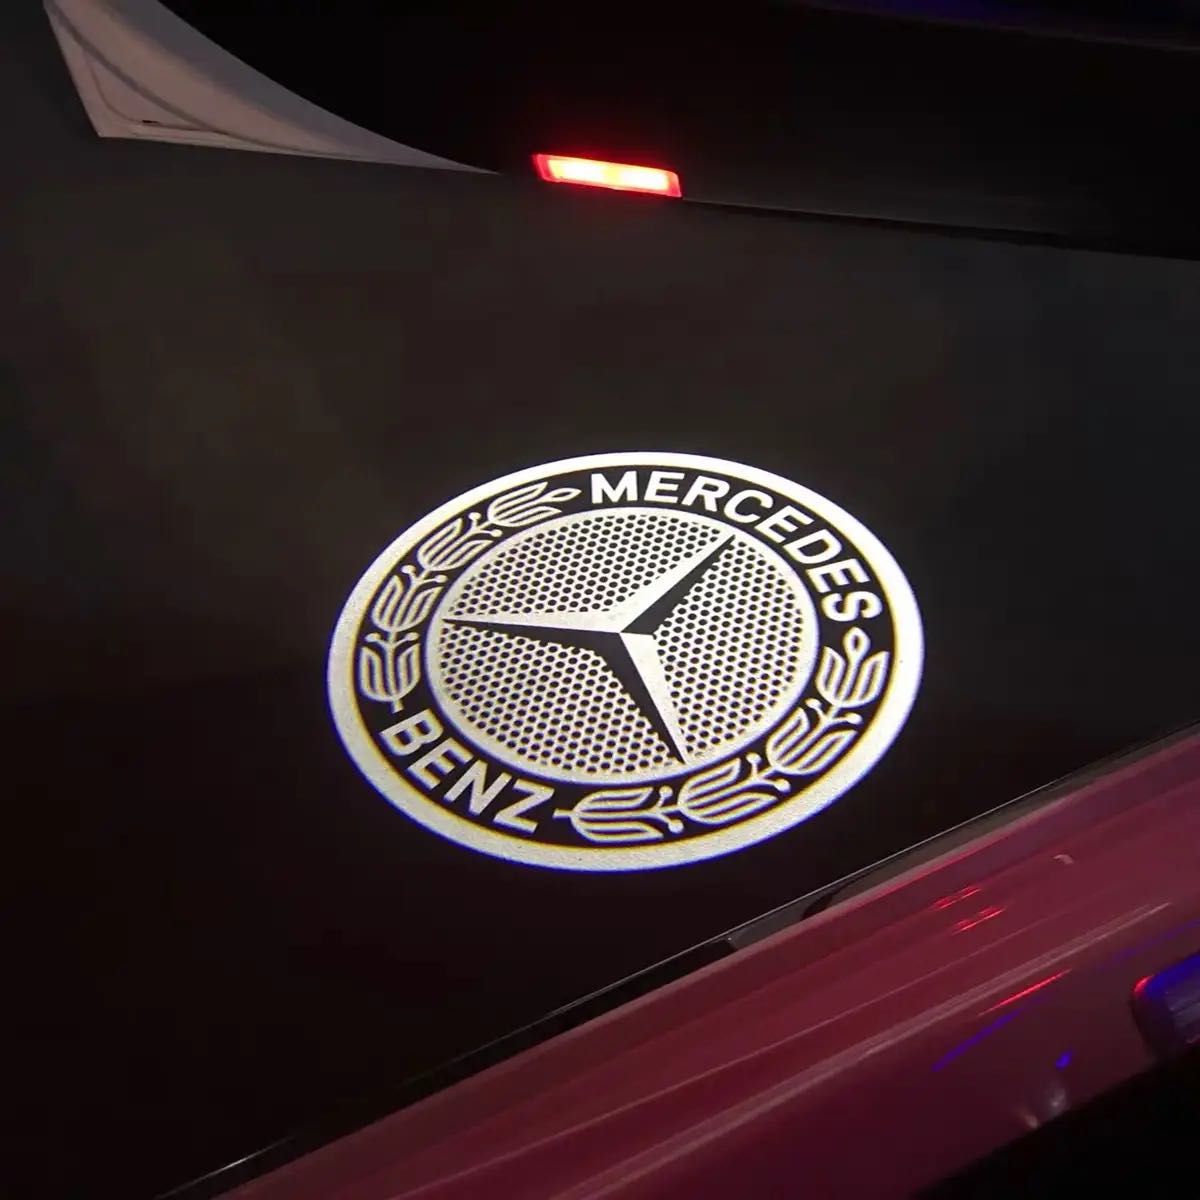 Mercedes Benzメルセデスベンツ Wheat Ears LED カーテシランプ カーテシライト ドア ウェルカムライトe